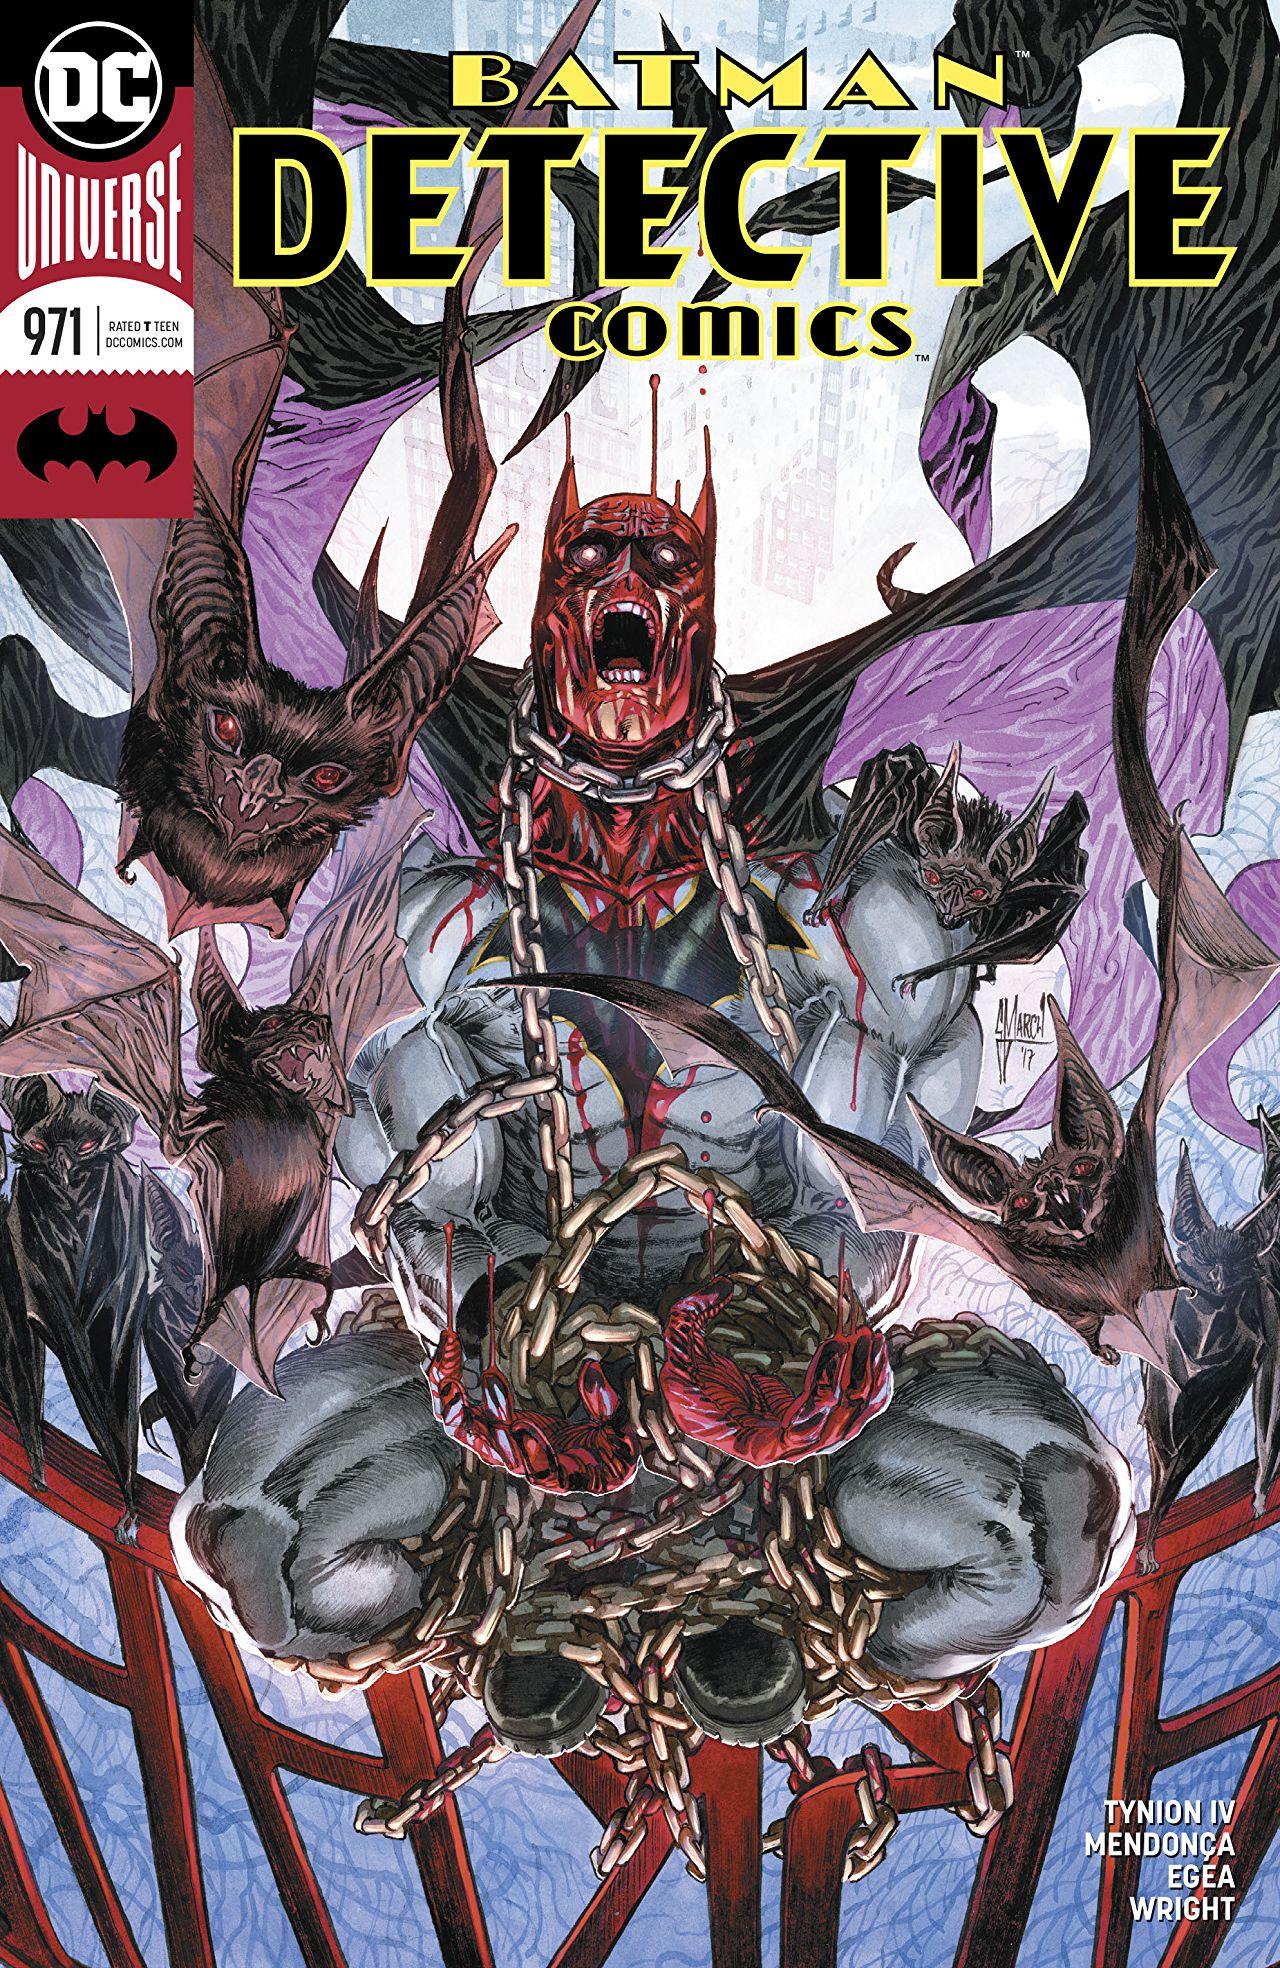 Detective Comics Vol. 1 #971